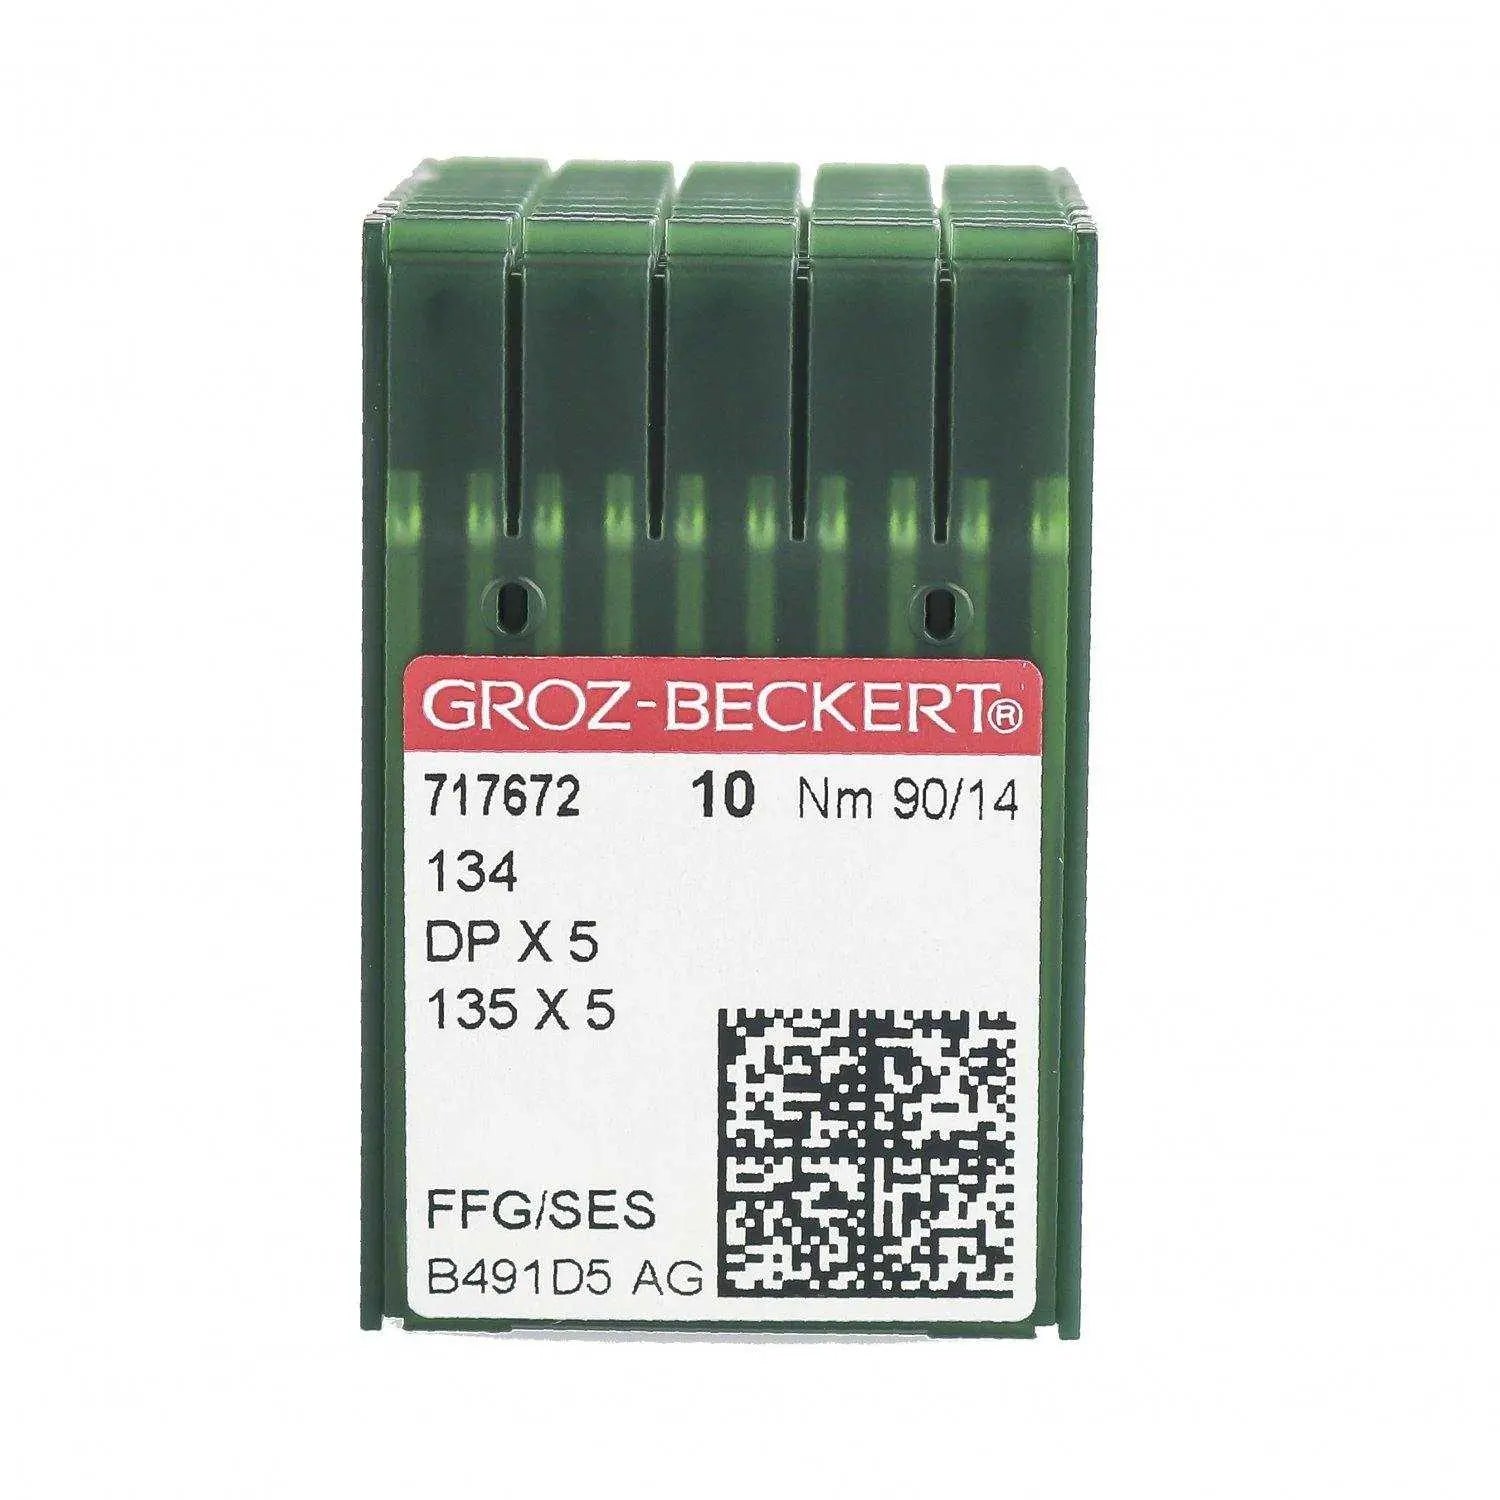 Ace DPx5 (134) Groz-Beckert